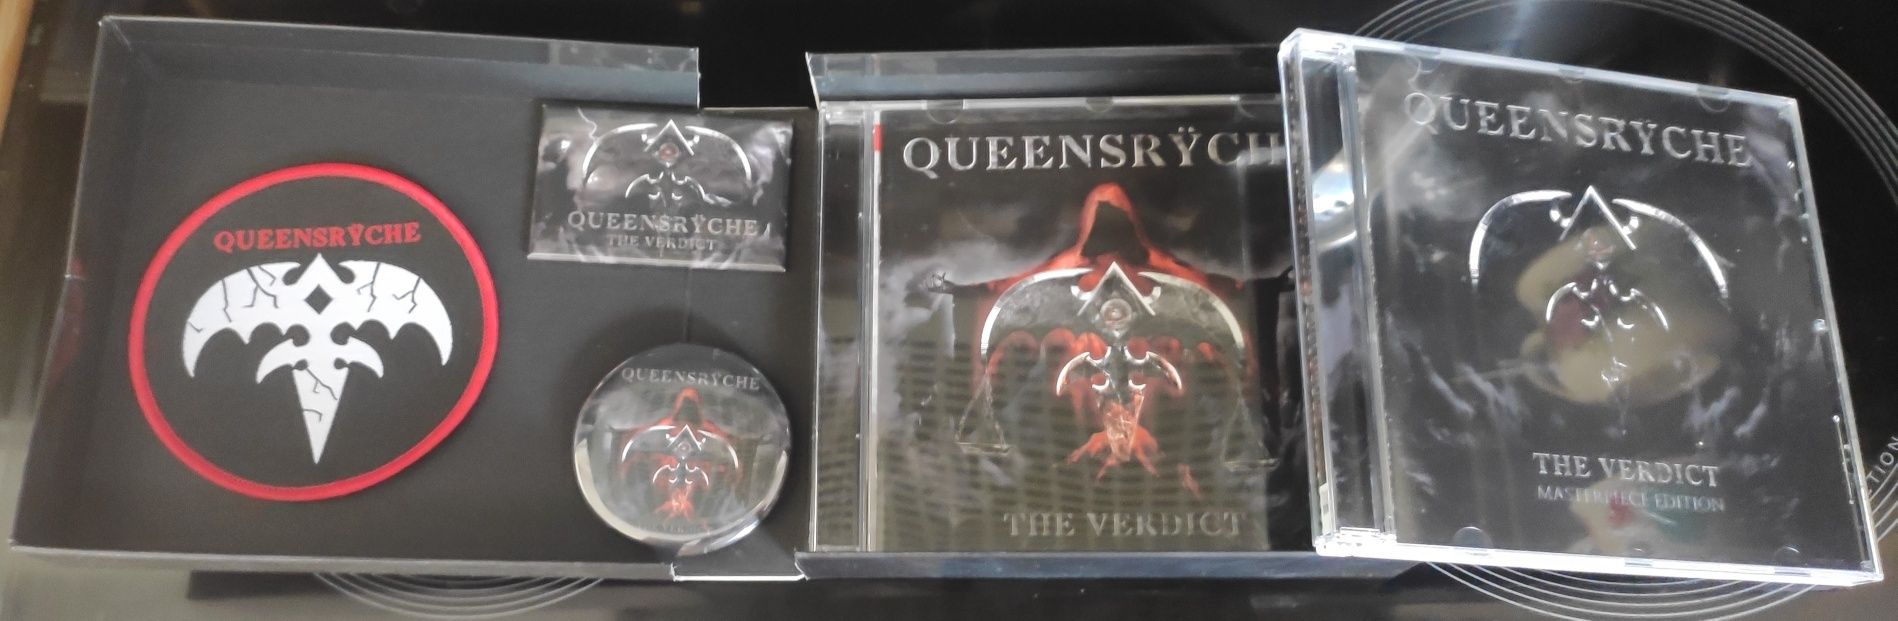 Queensryche "The Verdict" 2 cd